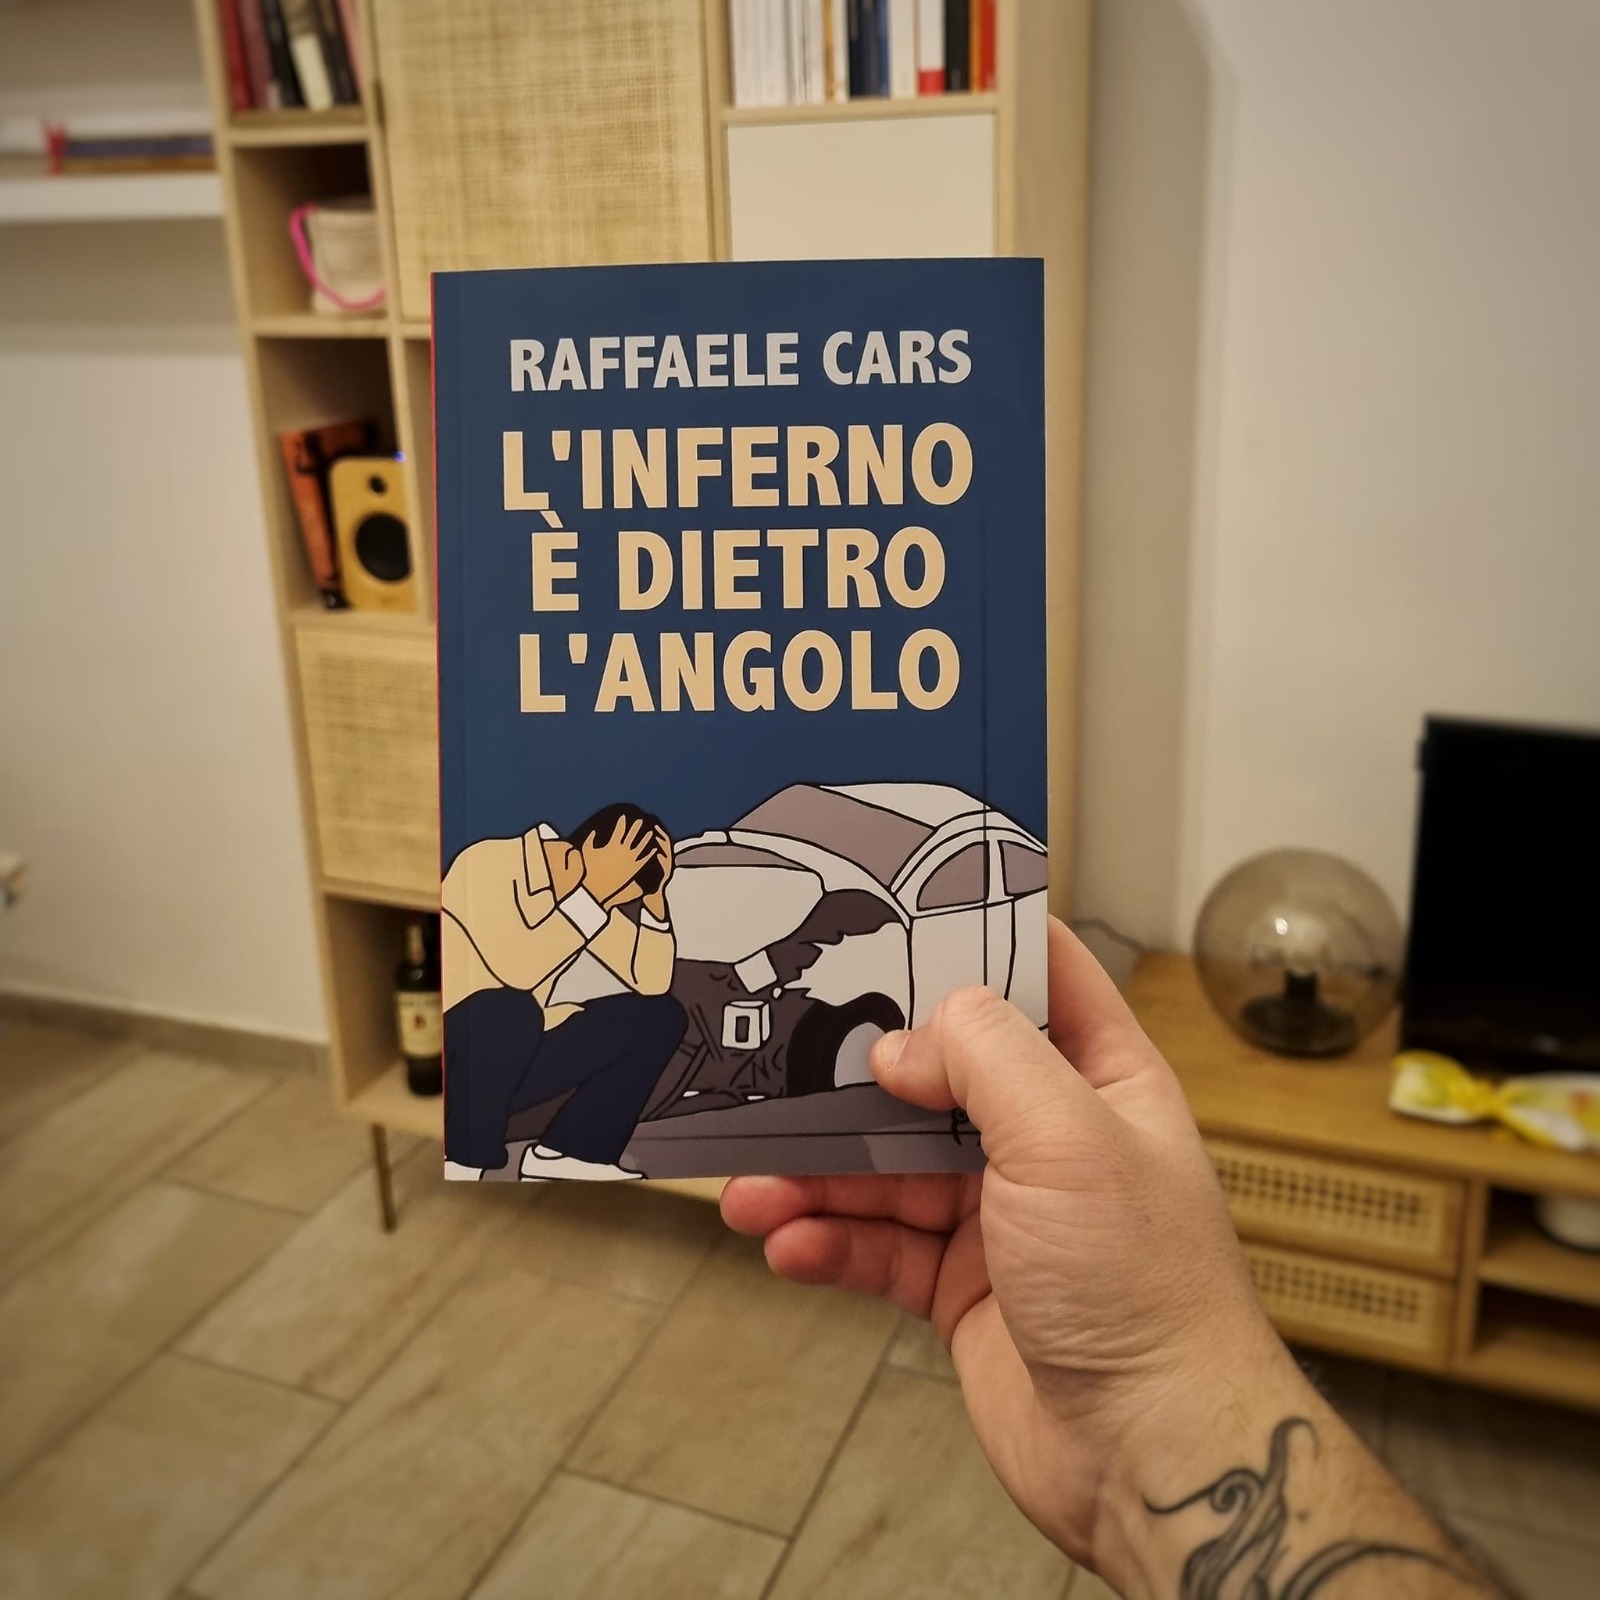 L’inferno è dietro l’angolo: il nuovo romanzo di Raffaele Cars